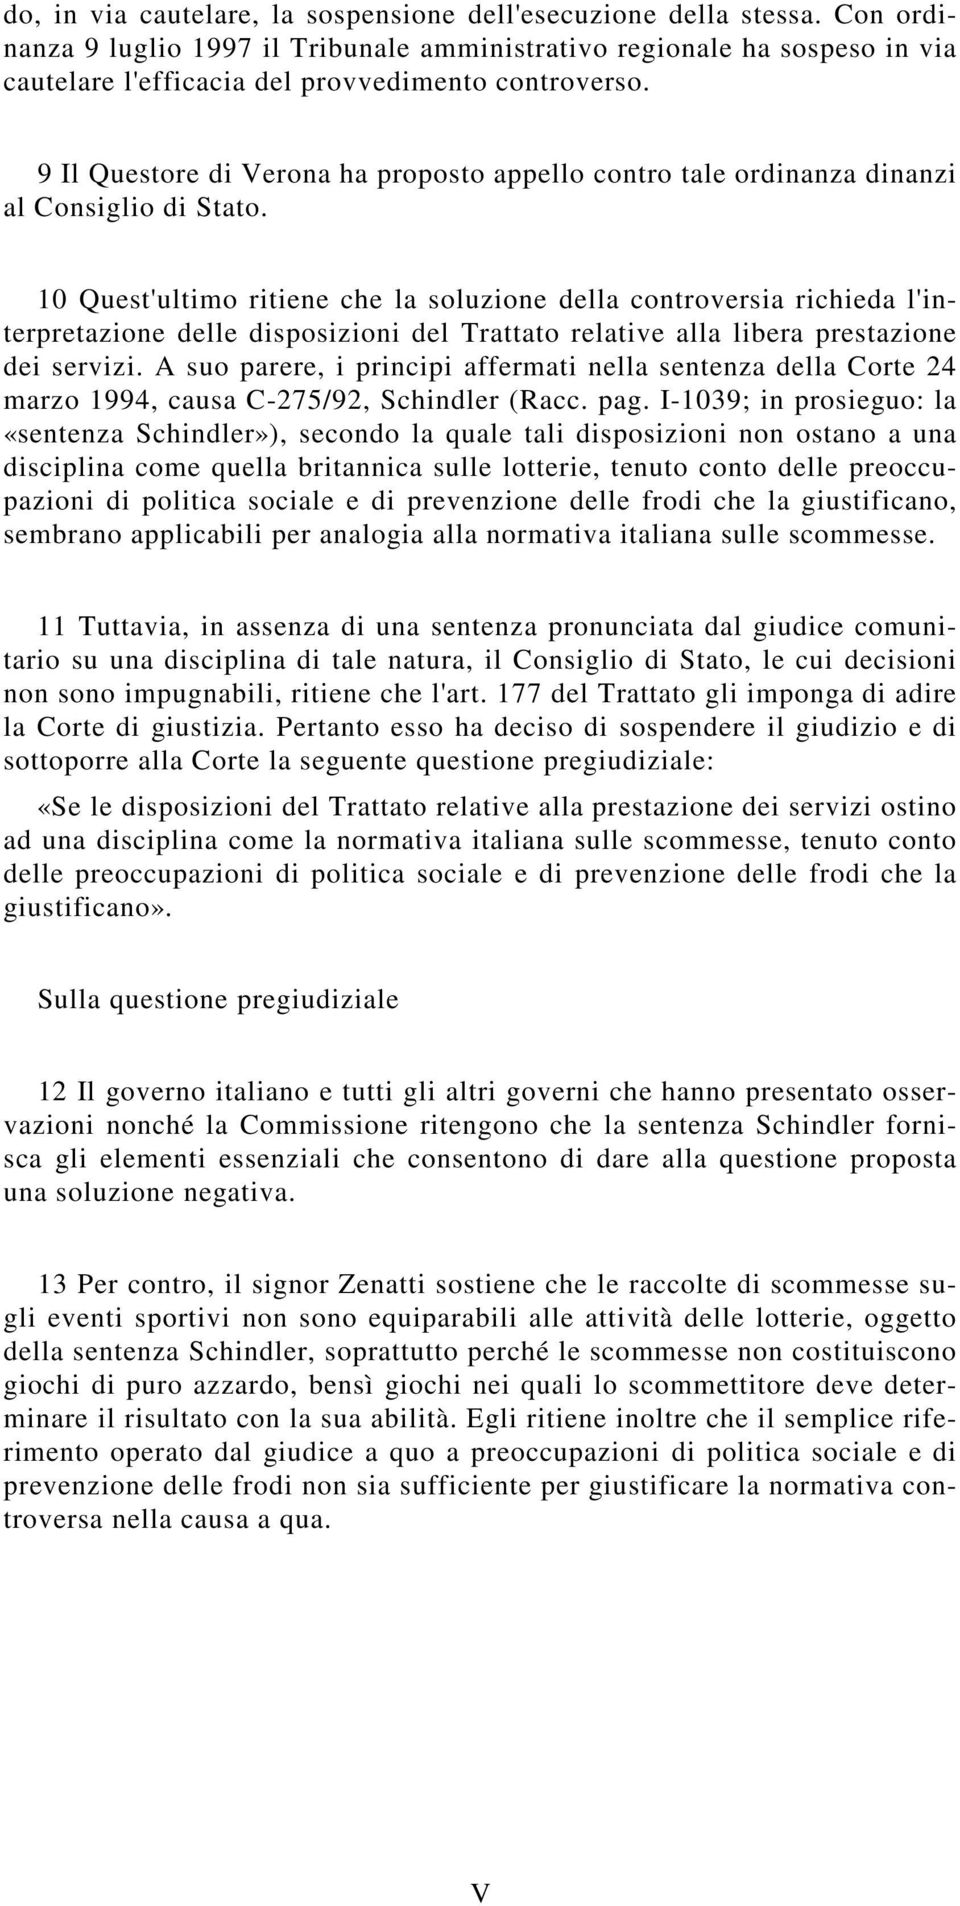 9 Il Questore di Verona ha proposto appello contro tale ordinanza dinanzi al Consiglio di Stato.